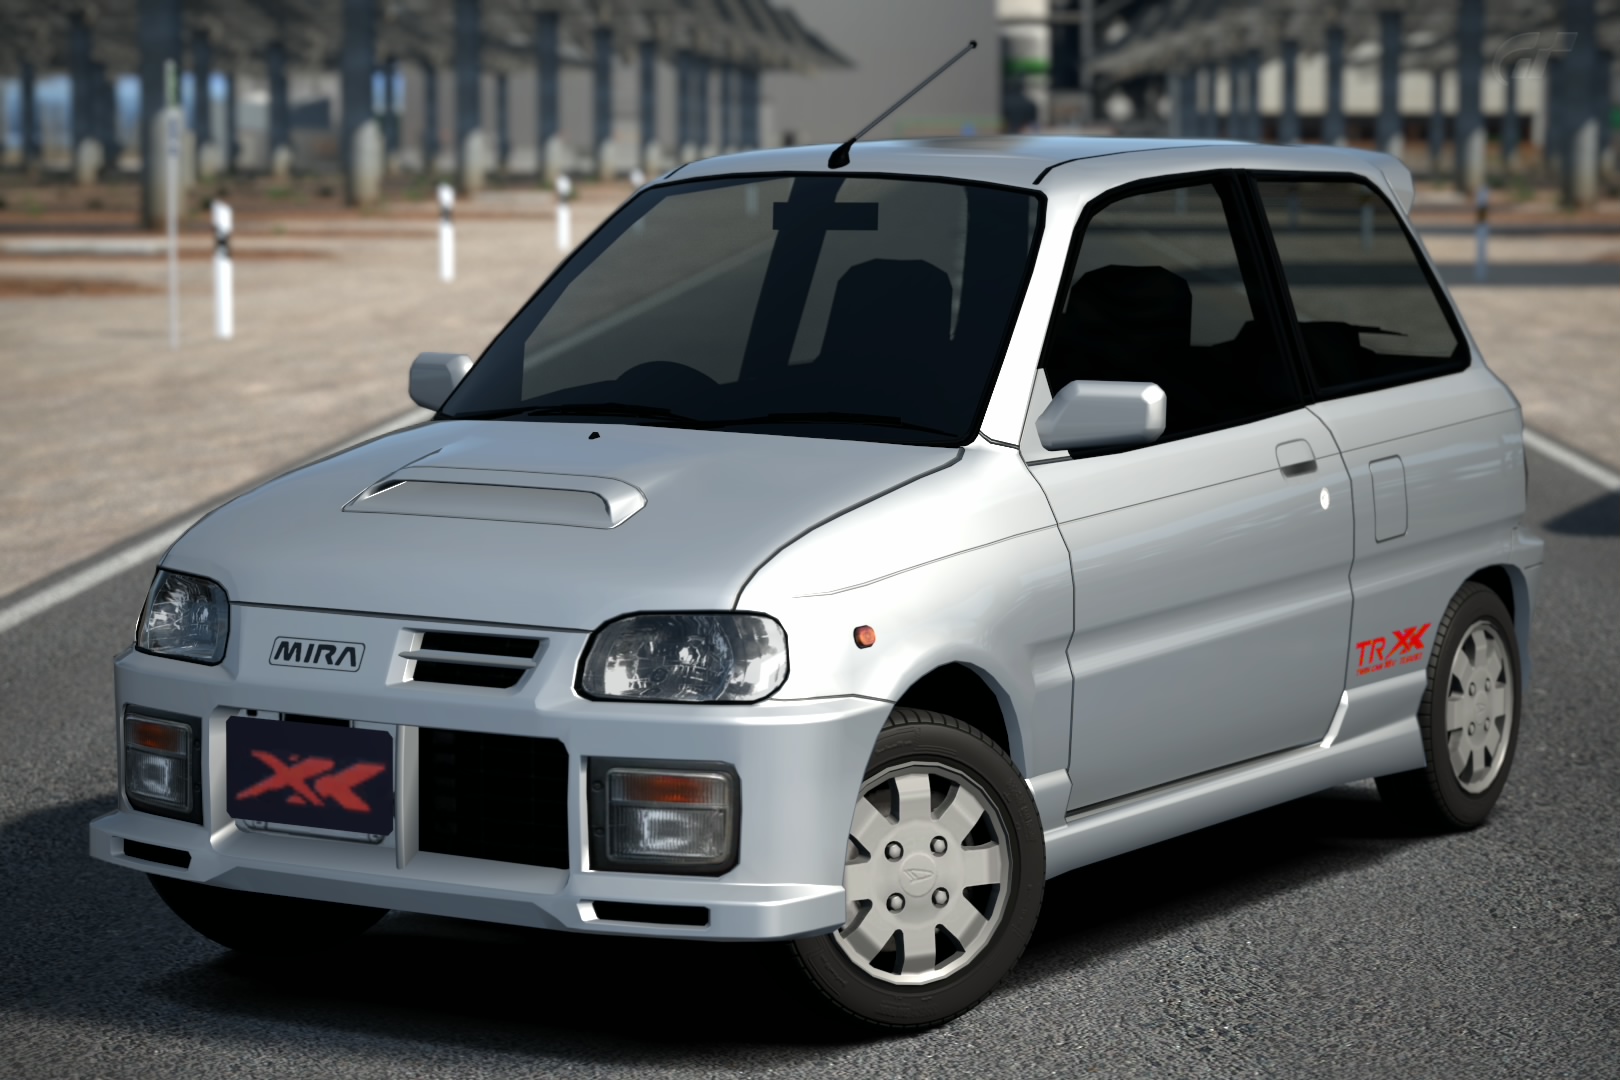 Daihatsu MIRA TR-XX Avanzato R '97 | Gran Turismo Wiki | Fandom